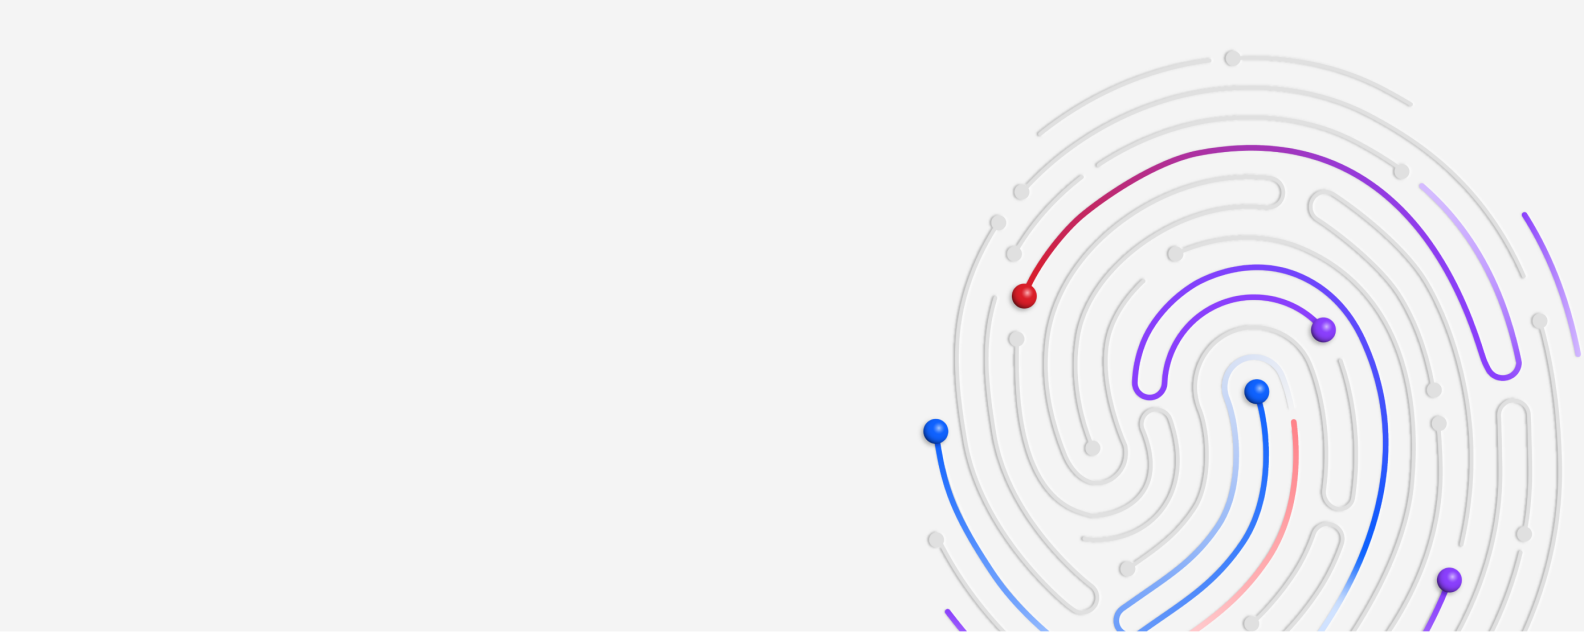 指纹插图，红色、蓝色和紫色的漩涡表示潜在的网络威胁